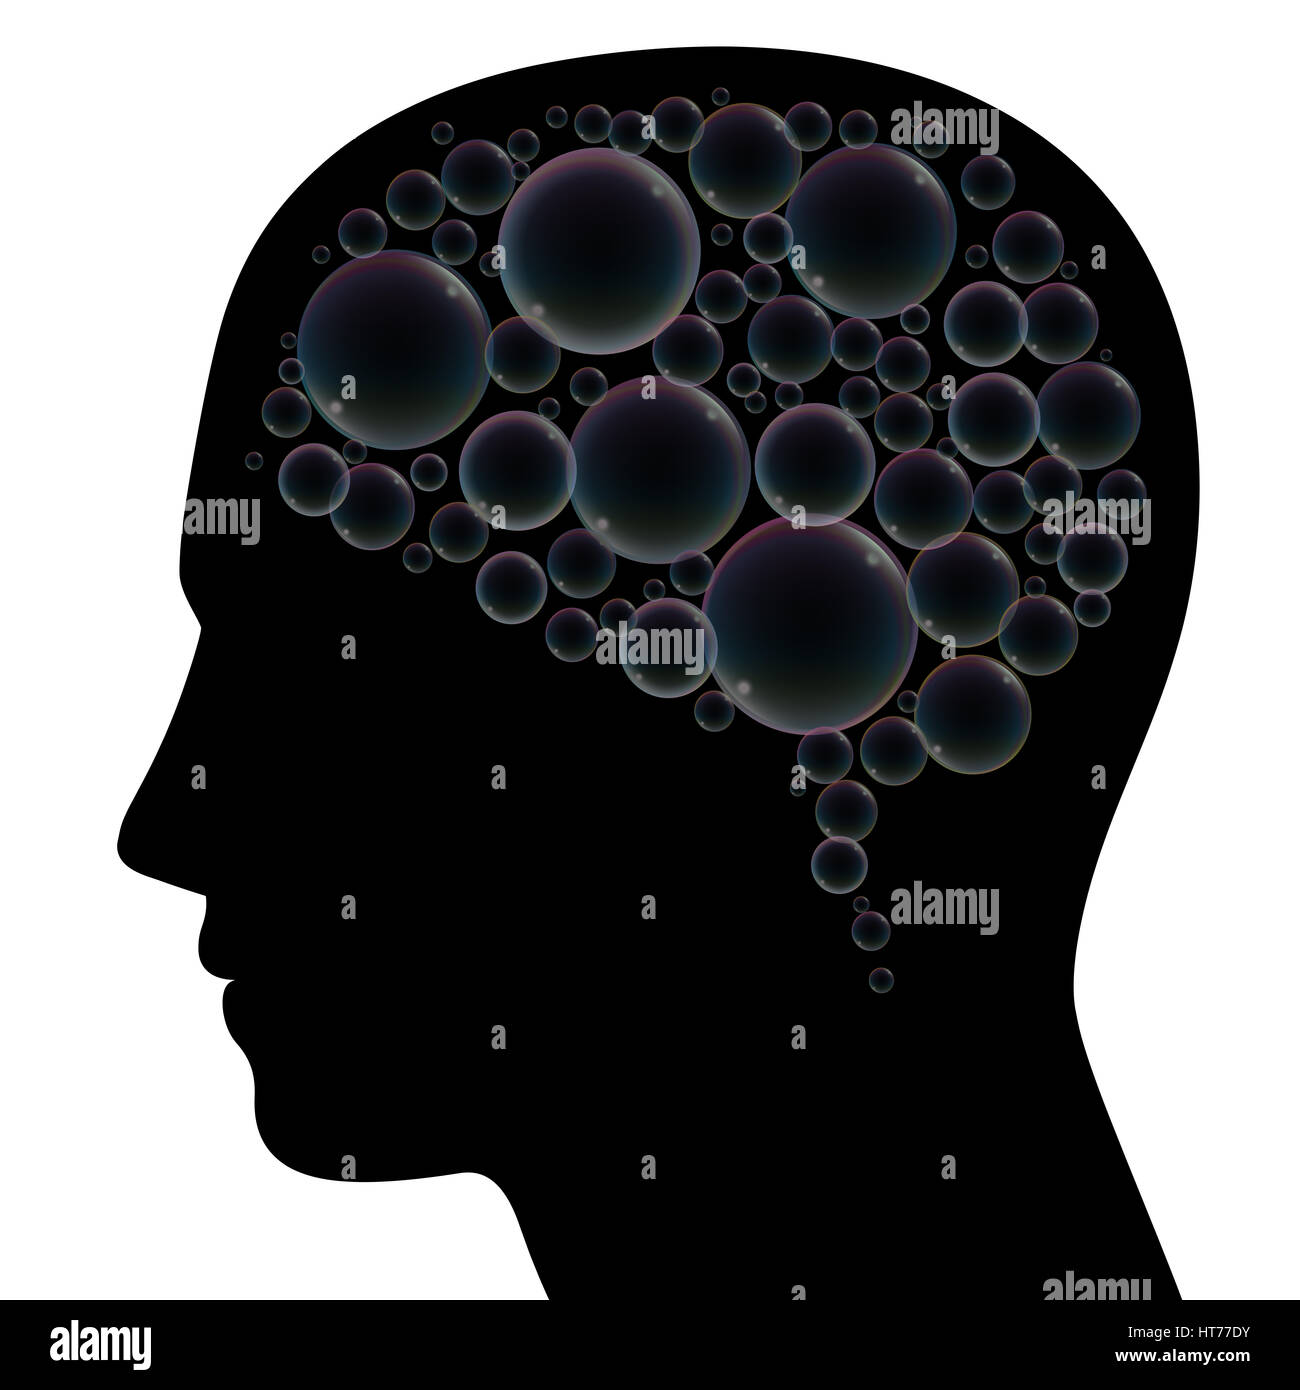 Des bulles de savon au lieu de cerveau dans une tête humaine, en tant que symbole de l'imagination, les rêves, la langueur, la confusion, la dépression, la démence ou le stress. Banque D'Images